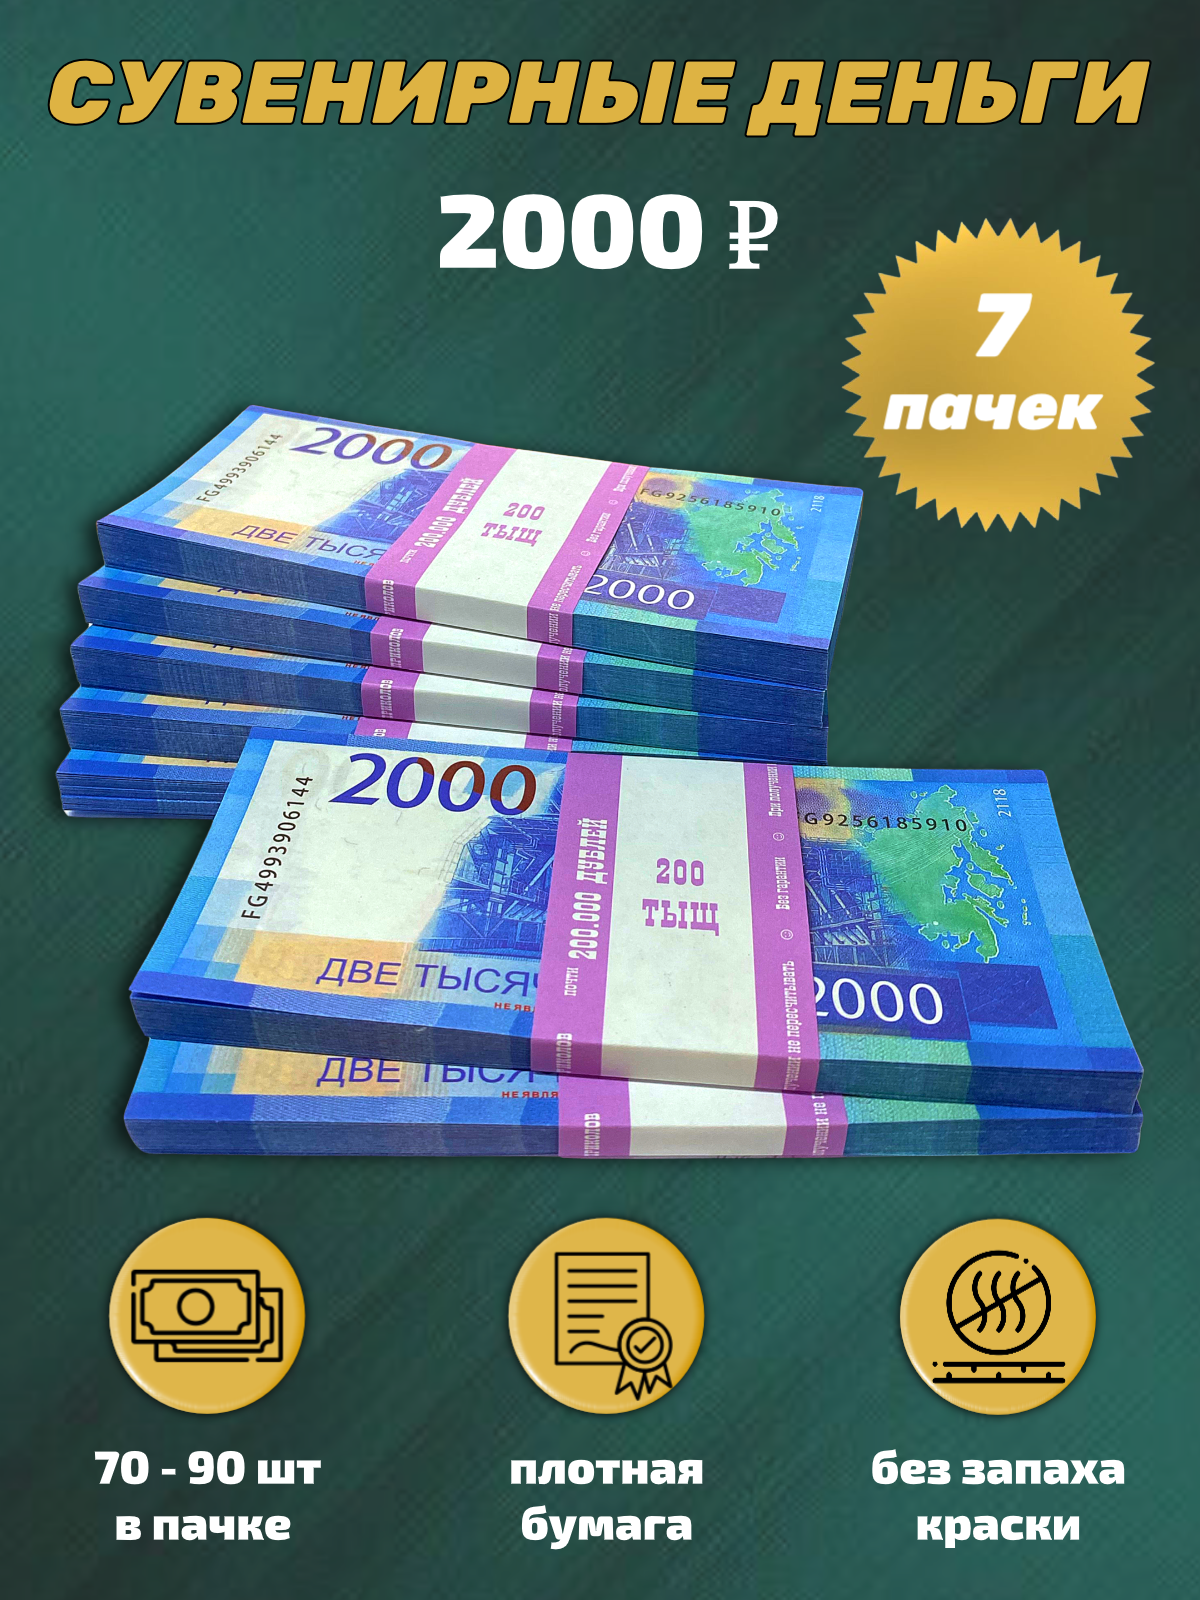 Сувенирные деньги, набор 2000 руб - 7 пачек